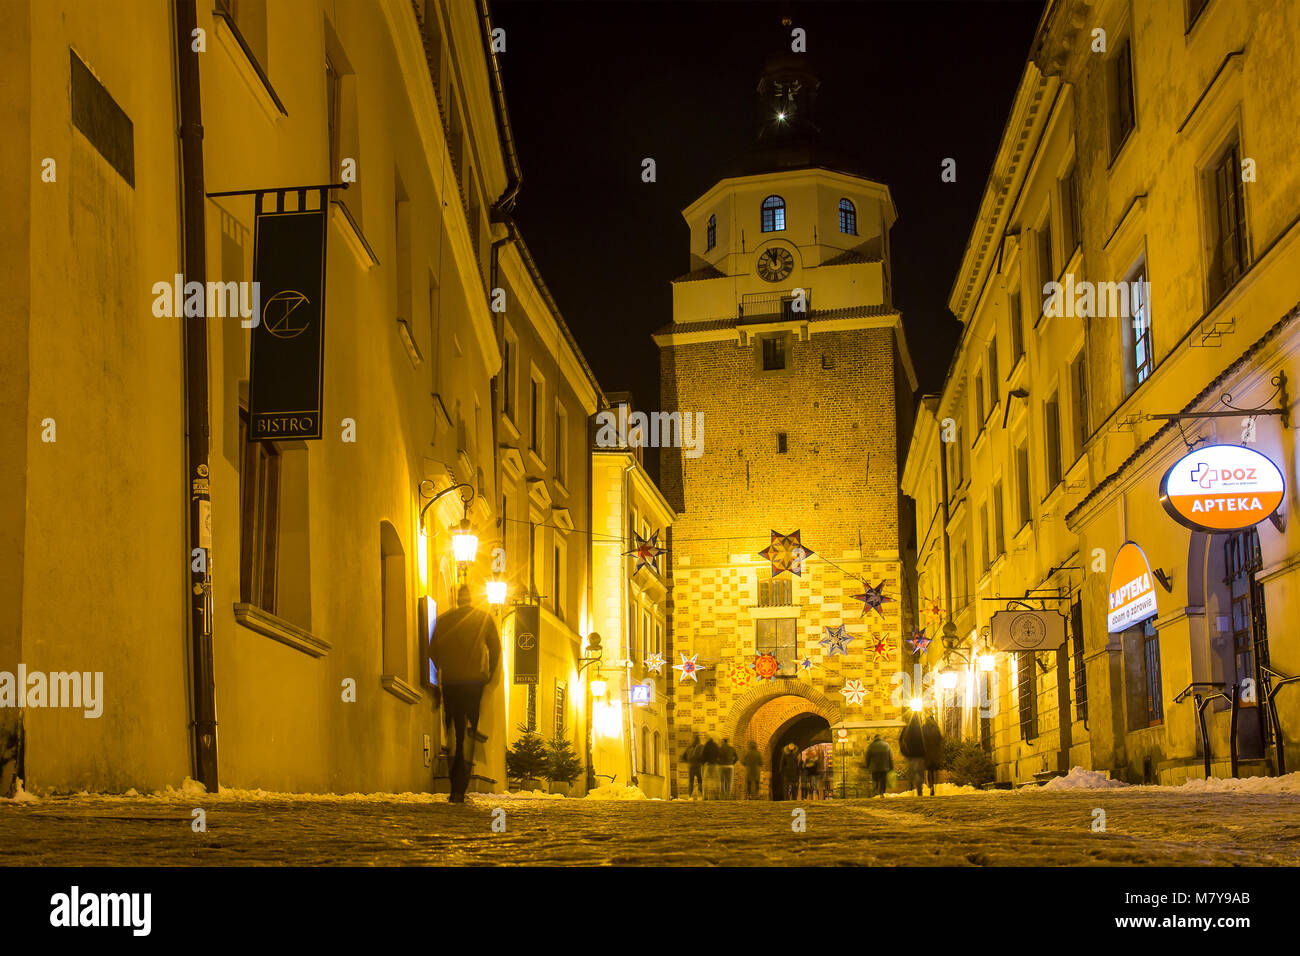 LUBLIN, POLOGNE - Le 17 janvier 2018 : Bramowa street et Brama Krakowska (Cracovie) porte dans la vieille ville de Lublin la nuit Banque D'Images